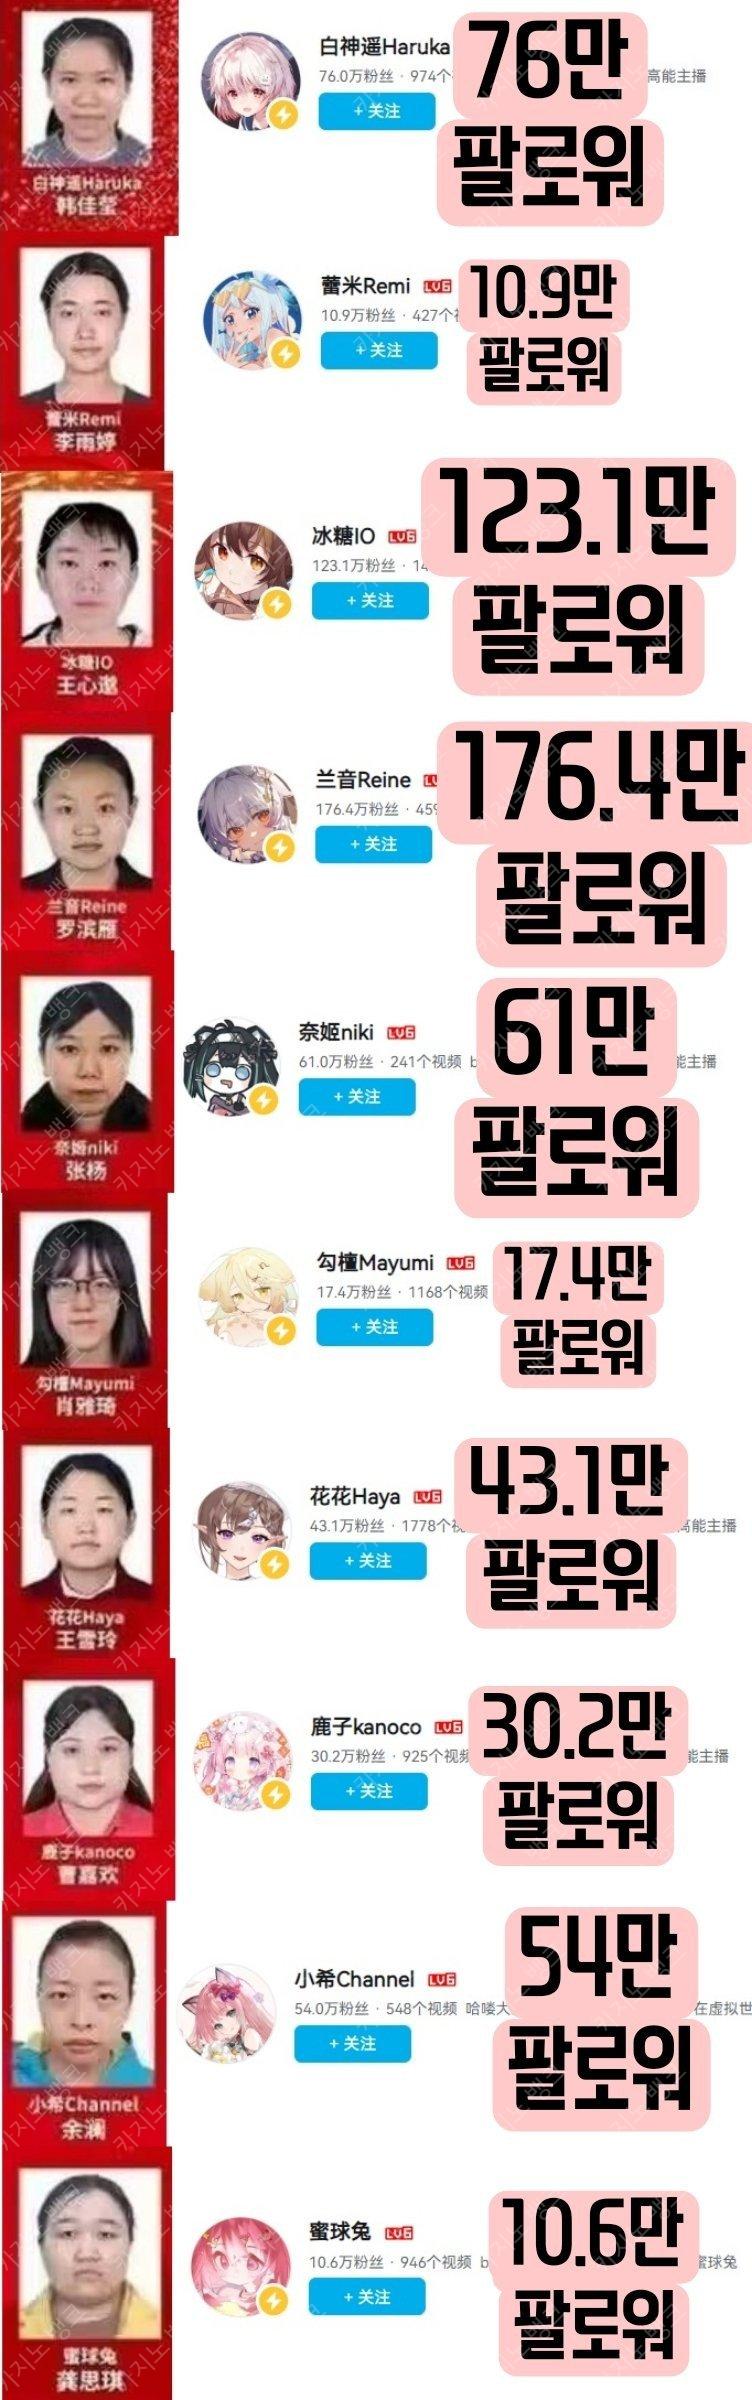 중국 버튜버 실제 얼굴 강제 공개